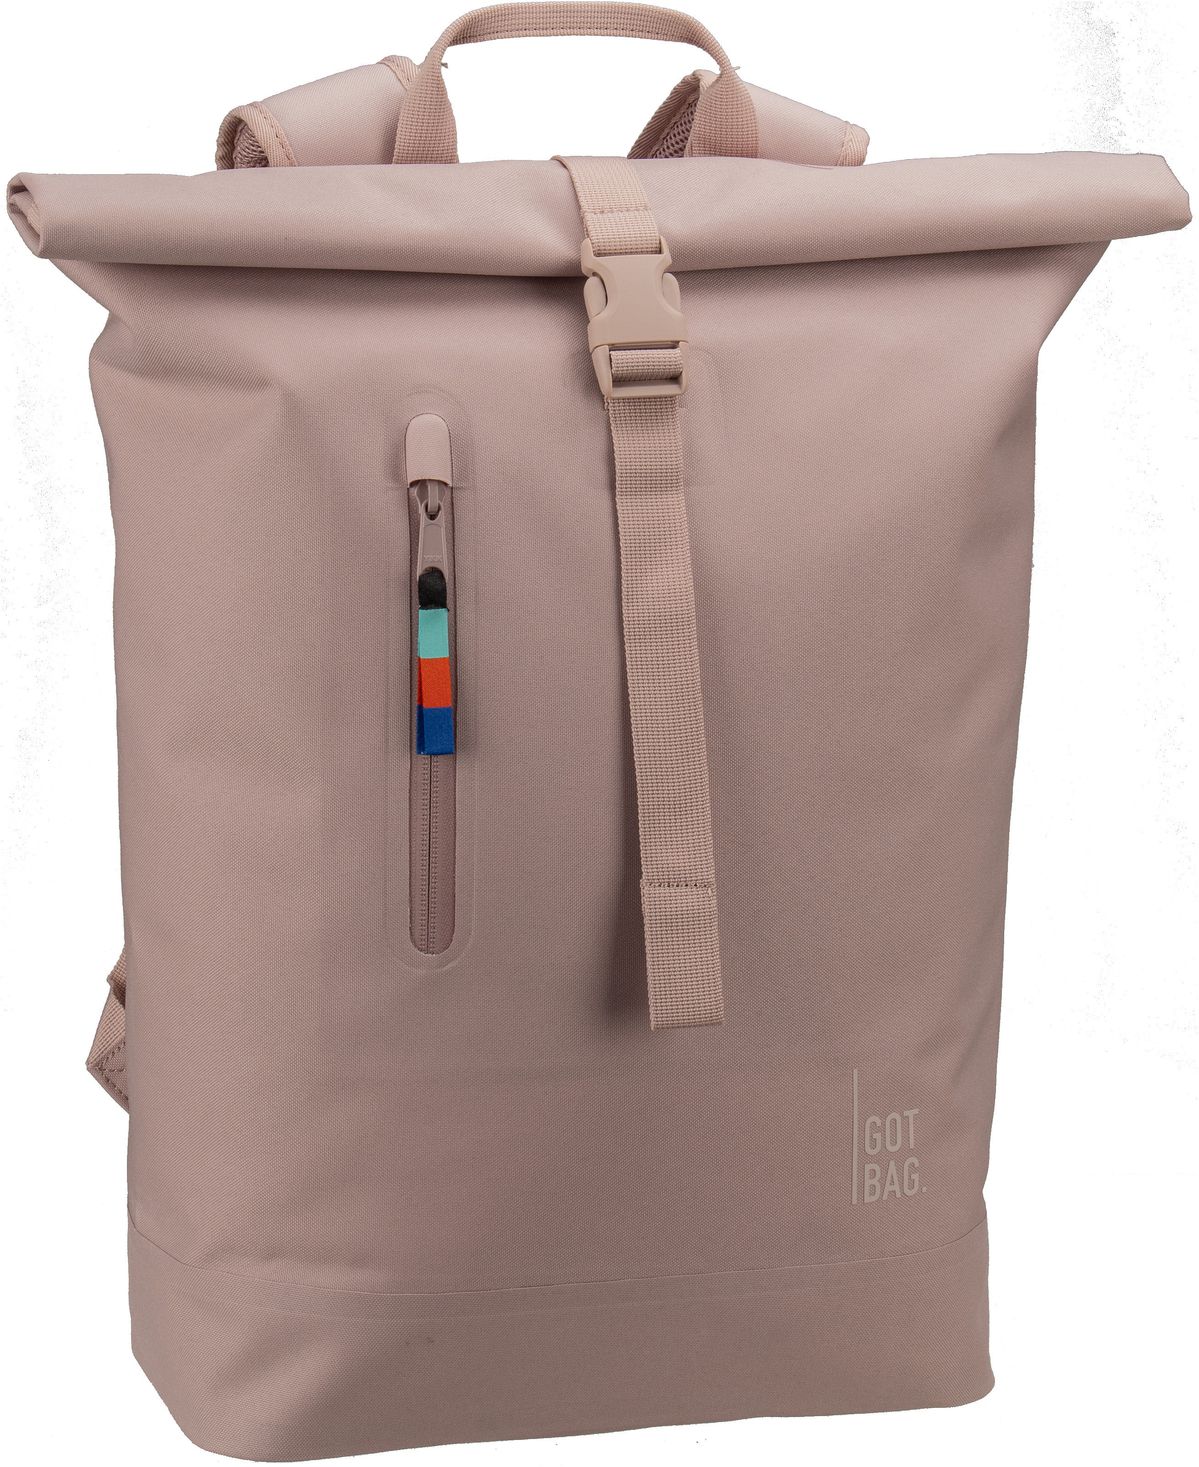 GOT BAG Rolltop Lite 2.0  in Violett (26 Liter), Rucksack / Backpack